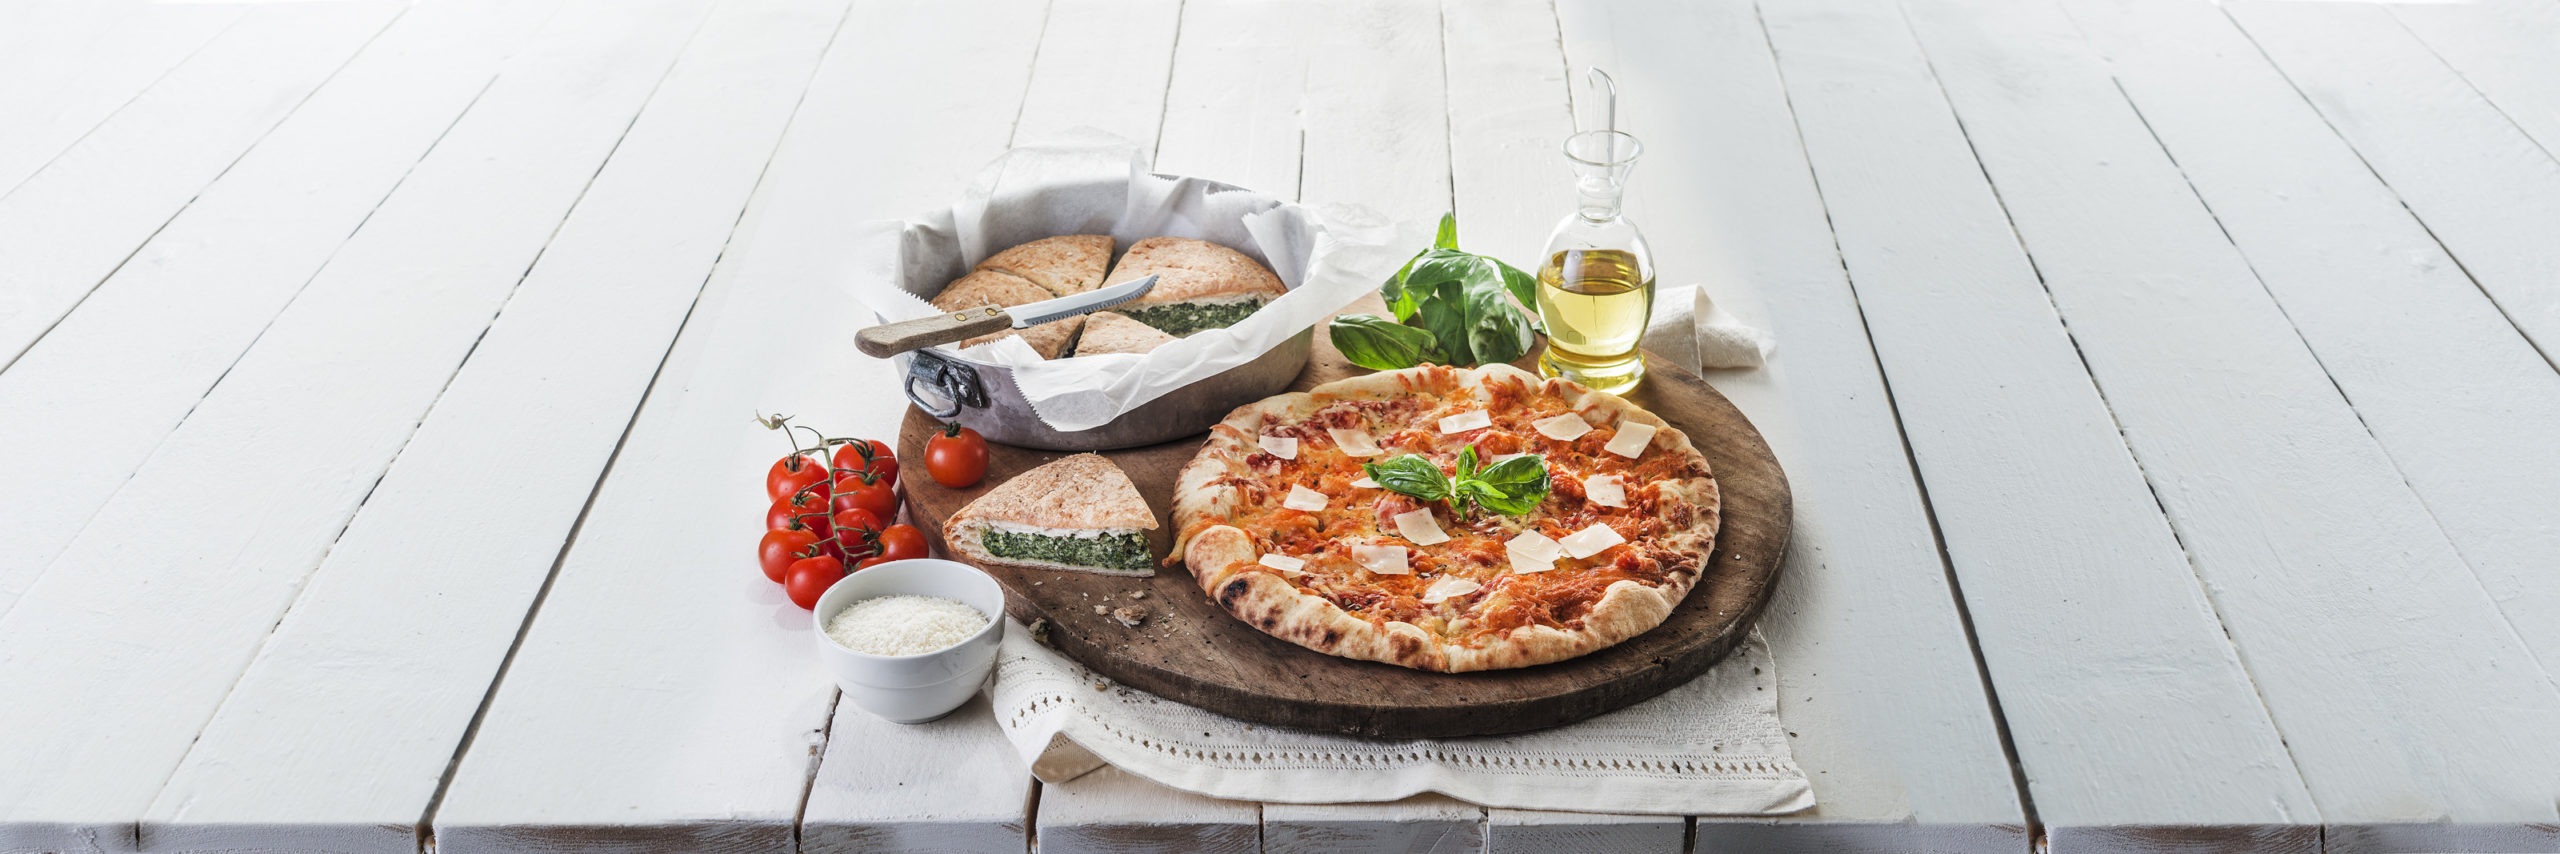 DalterFood Group selecciona la mozzarella más adecuada para los ingredientes de la pizza